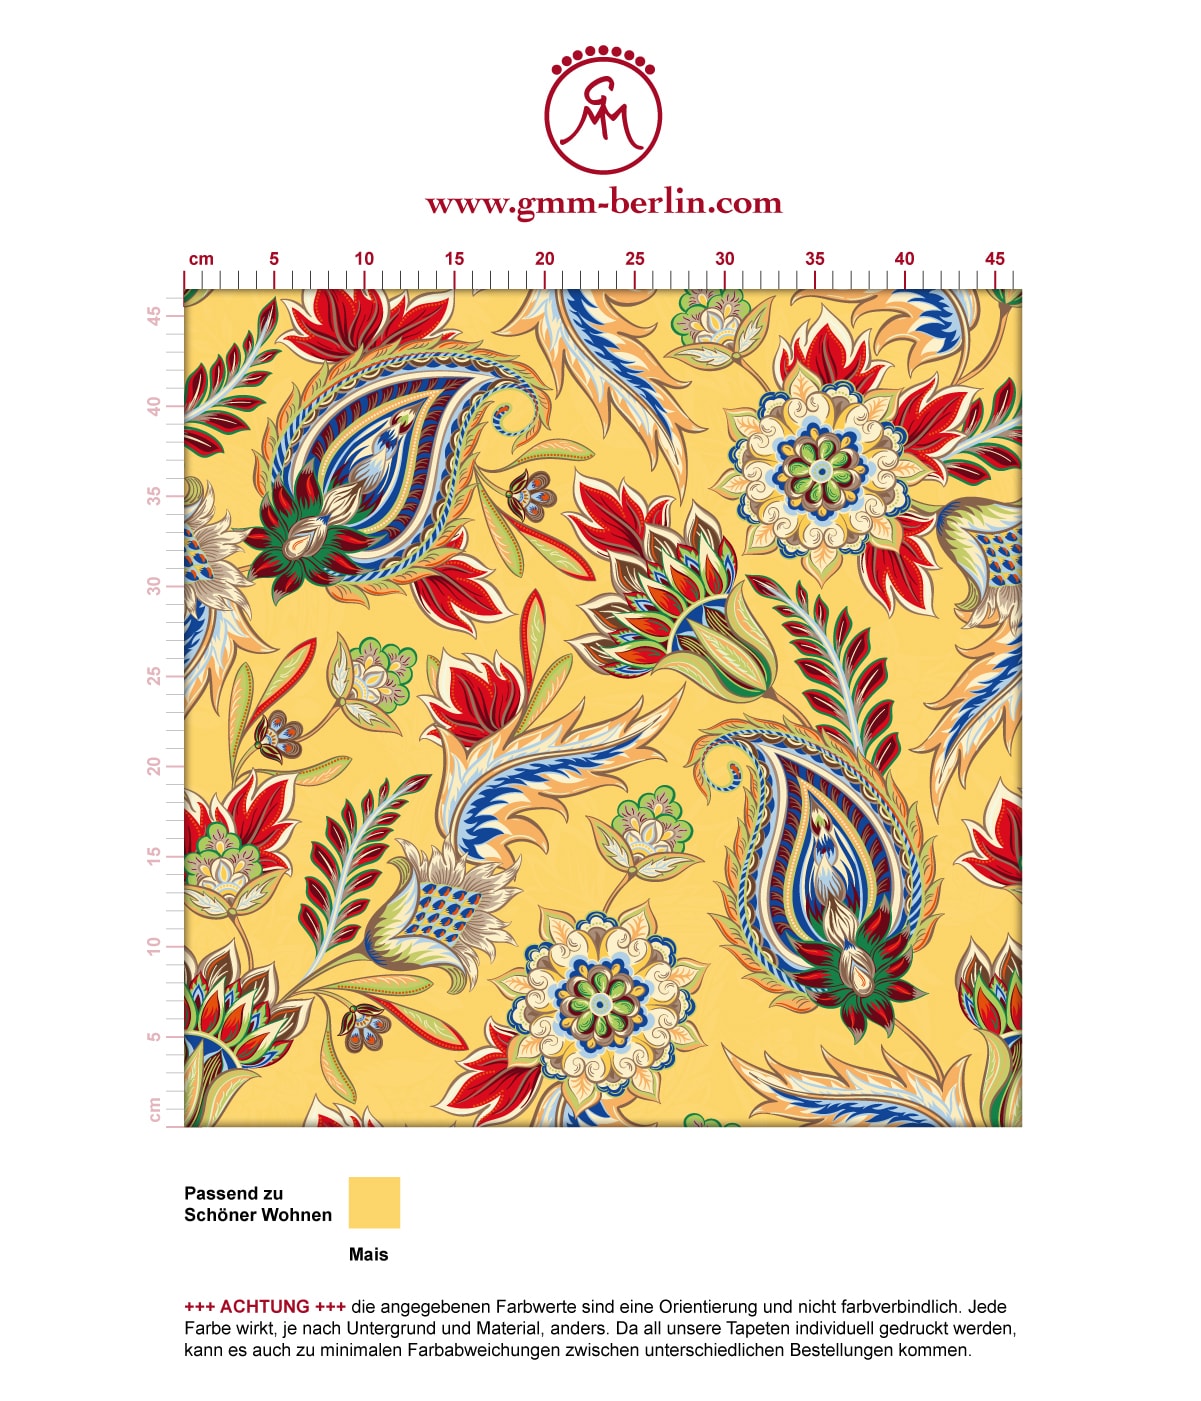 Gelbe edle Designer Tapete "Classic Paisley" mit dekorativem Blatt Muster (klein) angepasst an Schöner Wohnen Wandfarben. Aus dem GMM-BERLIN.com Sortiment: Schöne Tapeten in der Farbe: gelb